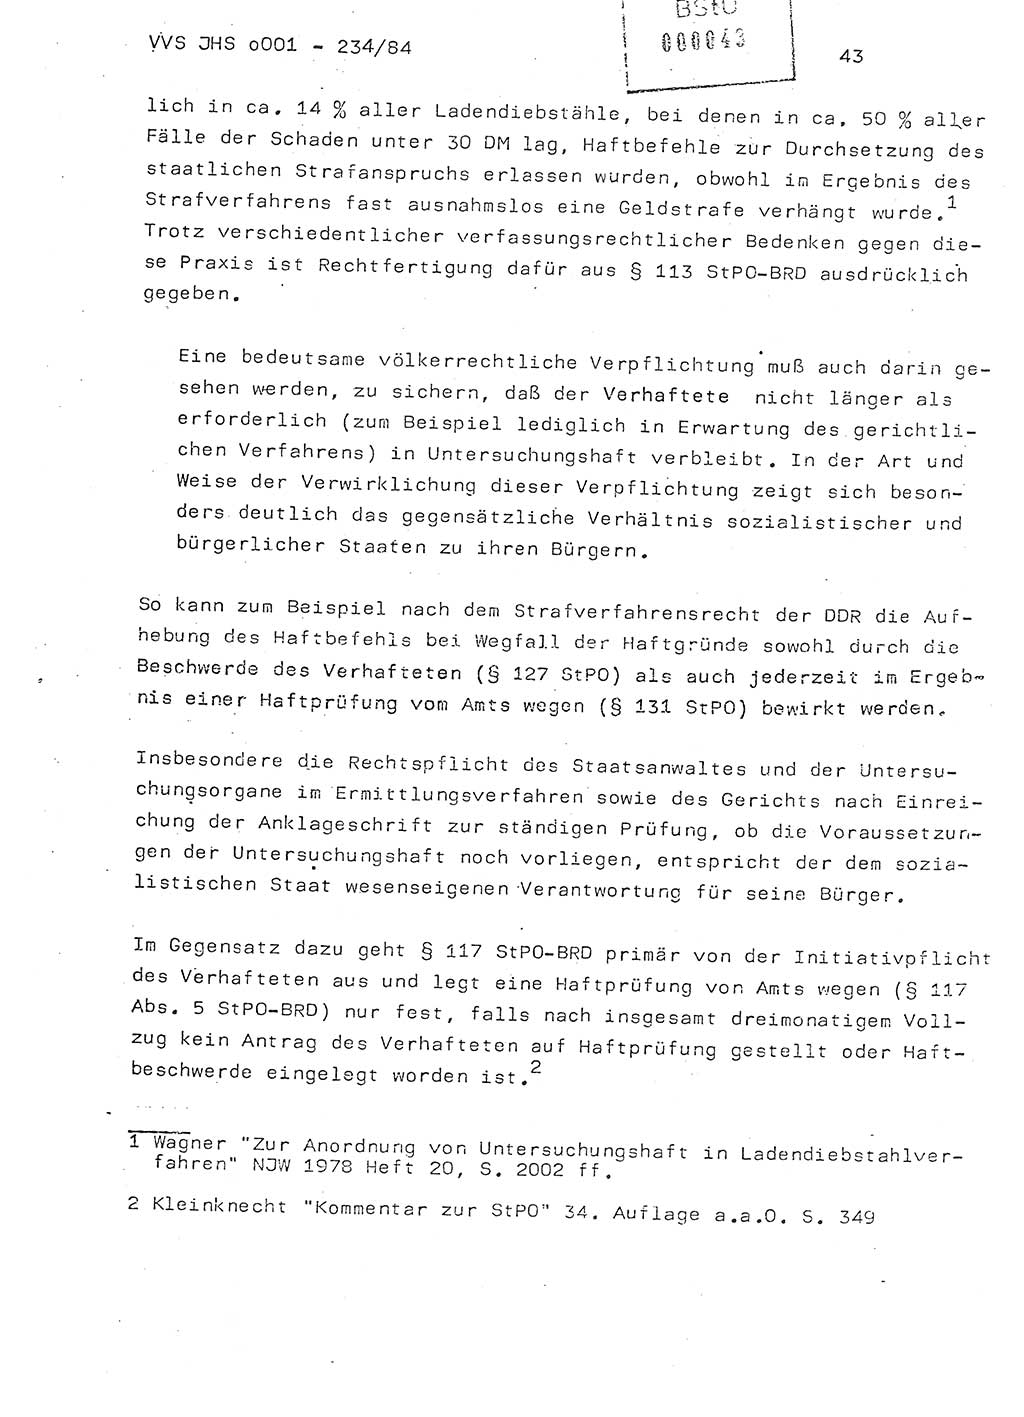 Dissertation Oberst Siegfried Rataizick (Abt. ⅩⅣ), Oberstleutnant Volkmar Heinz (Abt. ⅩⅣ), Oberstleutnant Werner Stein (HA Ⅸ), Hauptmann Heinz Conrad (JHS), Ministerium für Staatssicherheit (MfS) [Deutsche Demokratische Republik (DDR)], Juristische Hochschule (JHS), Vertrauliche Verschlußsache (VVS) o001-234/84, Potsdam 1984, Seite 43 (Diss. MfS DDR JHS VVS o001-234/84 1984, S. 43)